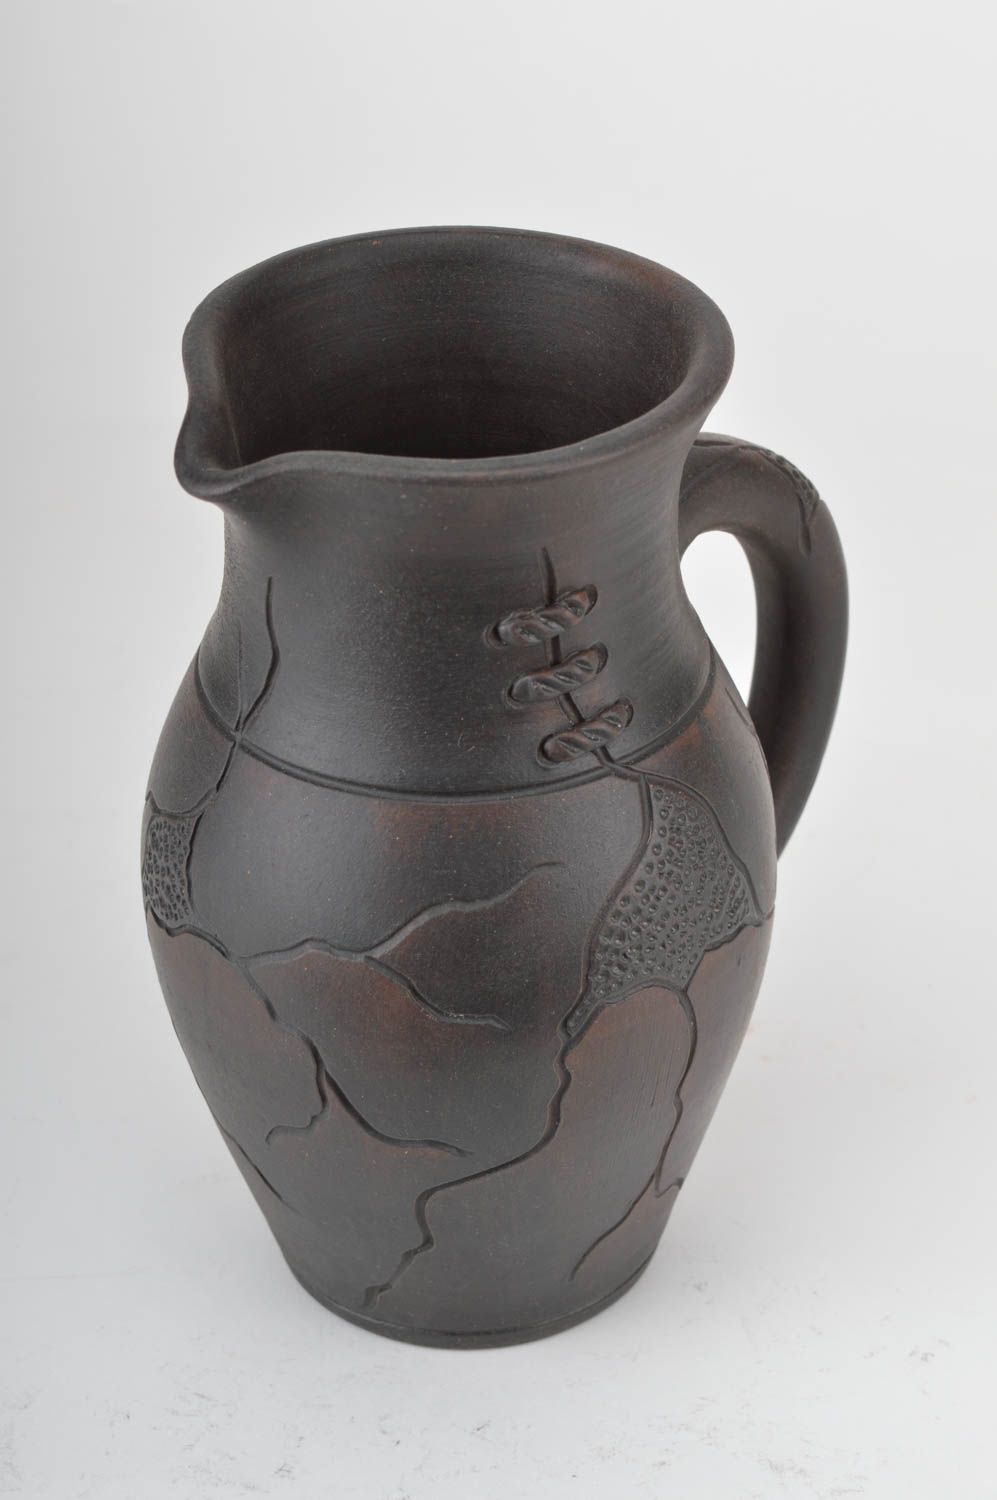 60 oz ceramic water jug with handle in dark brown color 2 lb photo 2